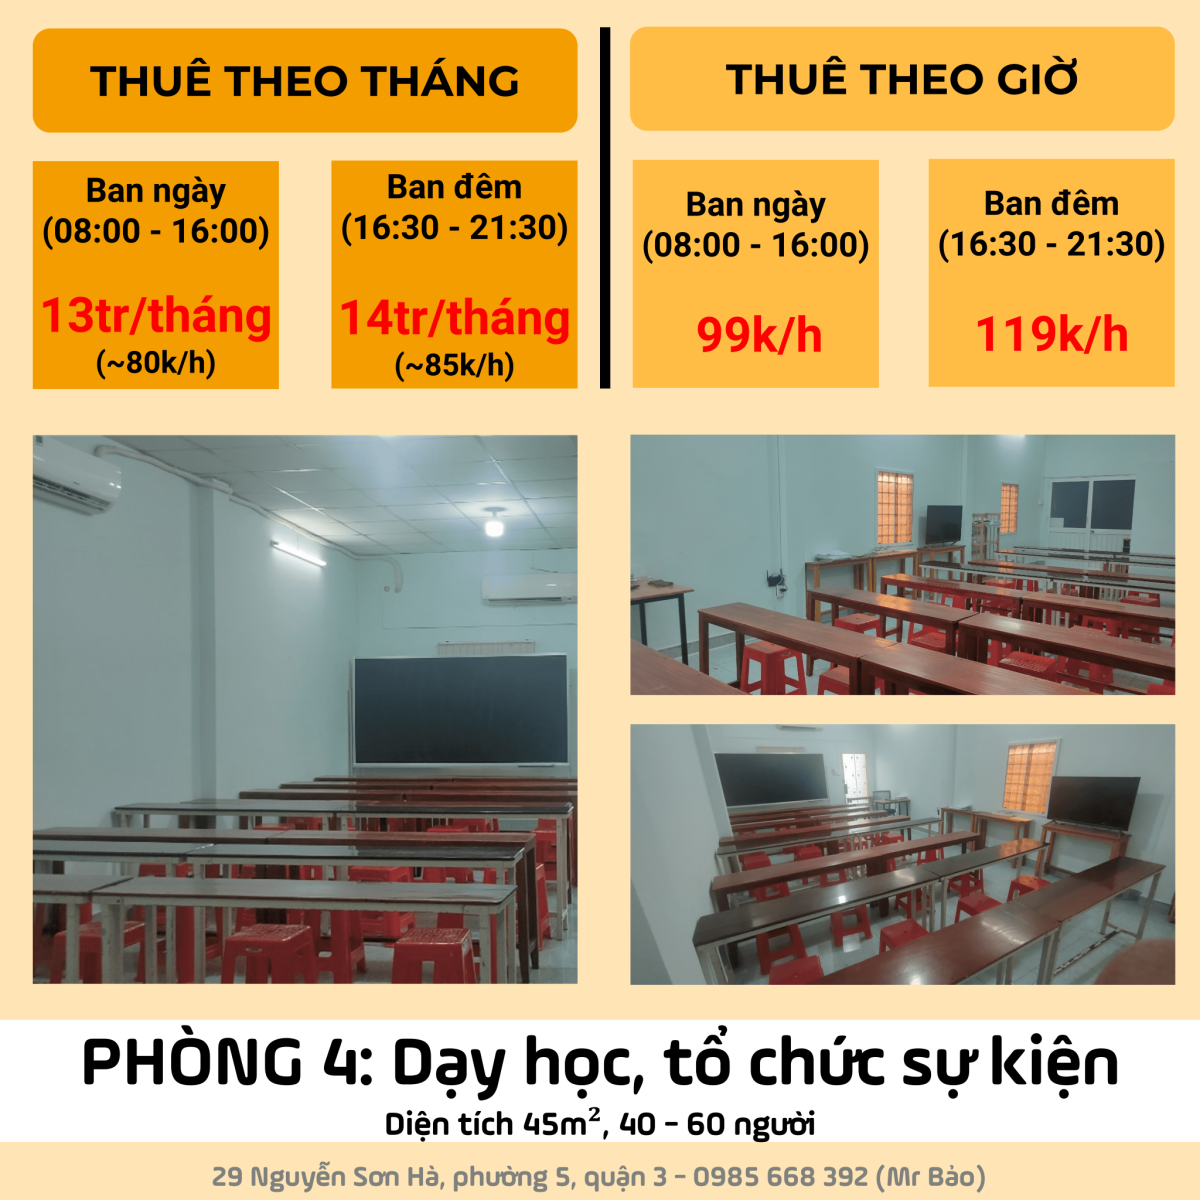 Cho thuê phòng dạy học, học nhóm, tổ chức sự kiện ngay Nguyễn Sơn Hà, Phường 5, Quận 3